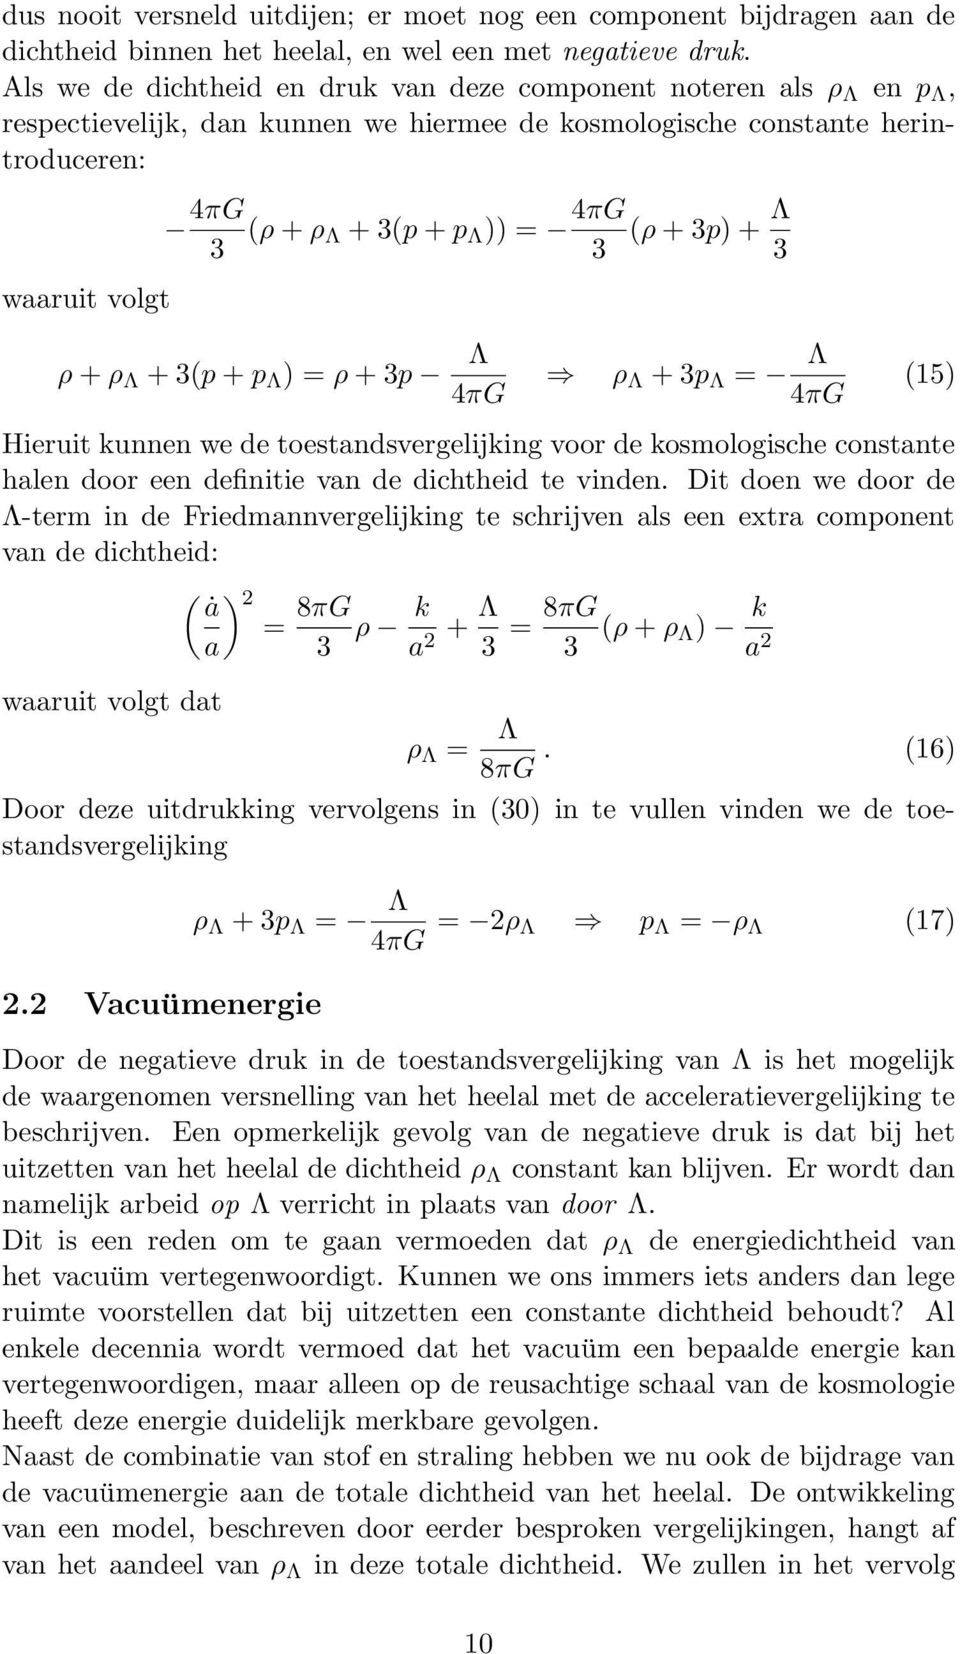 4πG 3 (ρ + 3p) + Λ 3 ρ + ρ Λ + 3(p + p Λ ) = ρ + 3p Λ 4πG ρ Λ + 3p Λ = Λ 4πG (15) Hieruit kunnen we de toestandsvergelijking voor de kosmologische constante halen door een definitie van de dichtheid